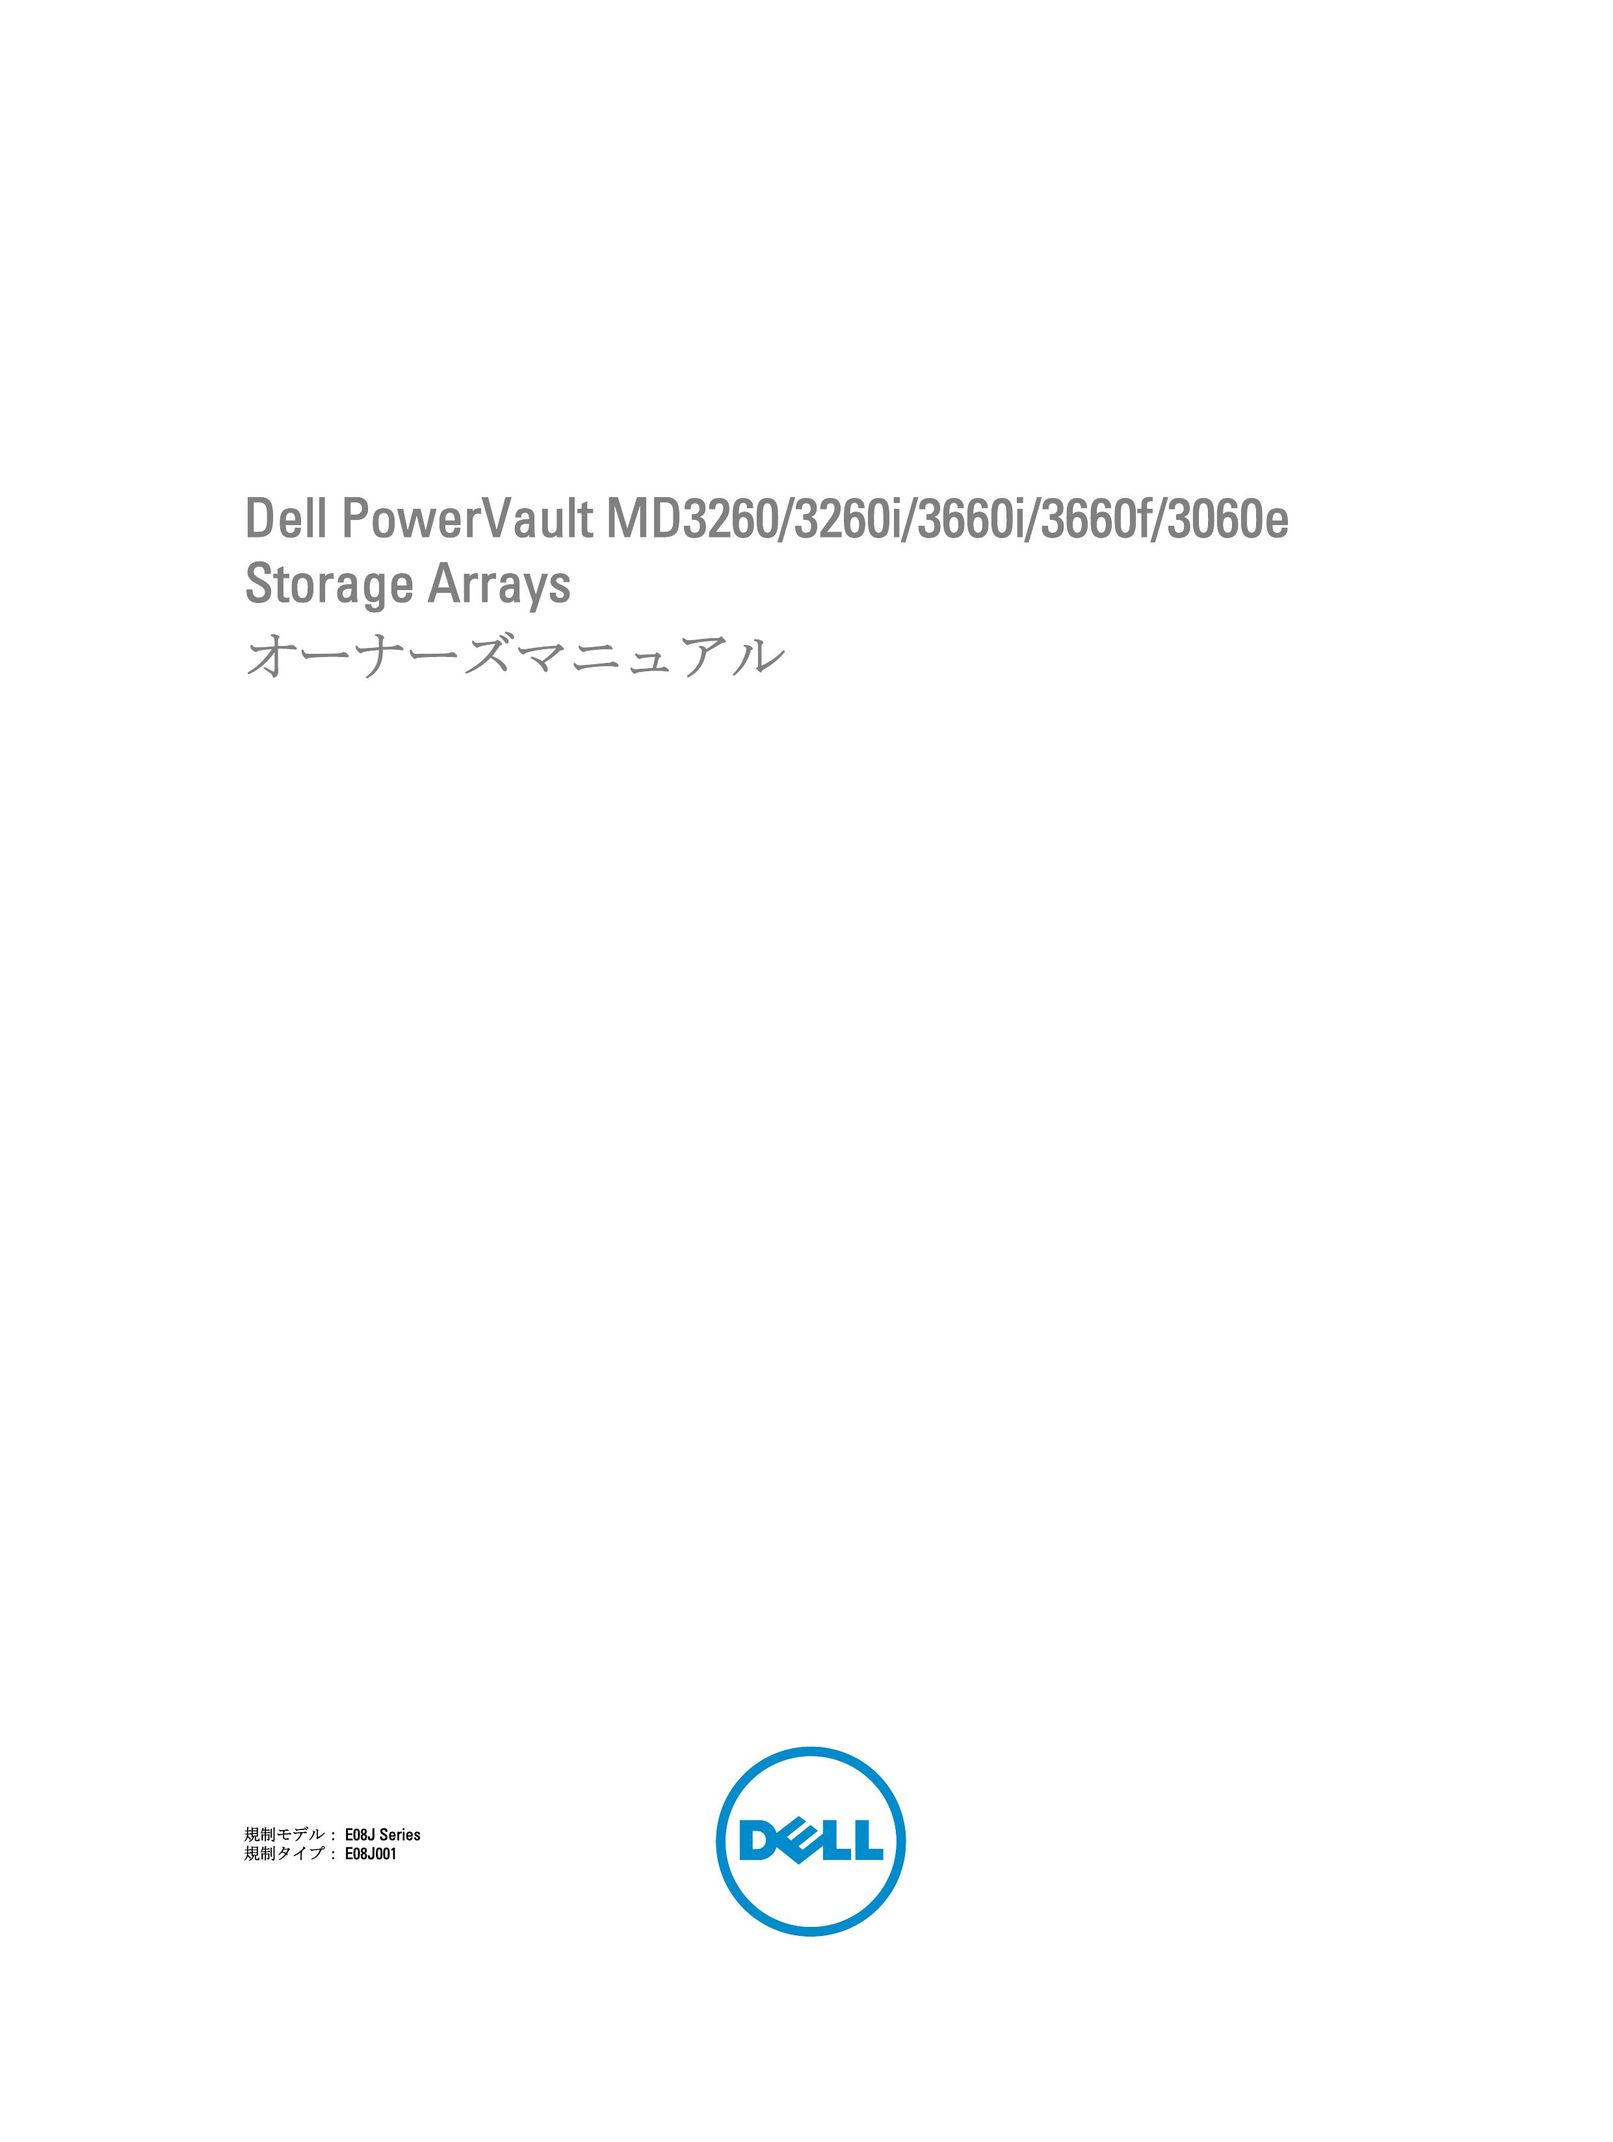 Dell 3660f Computer Drive User Manual